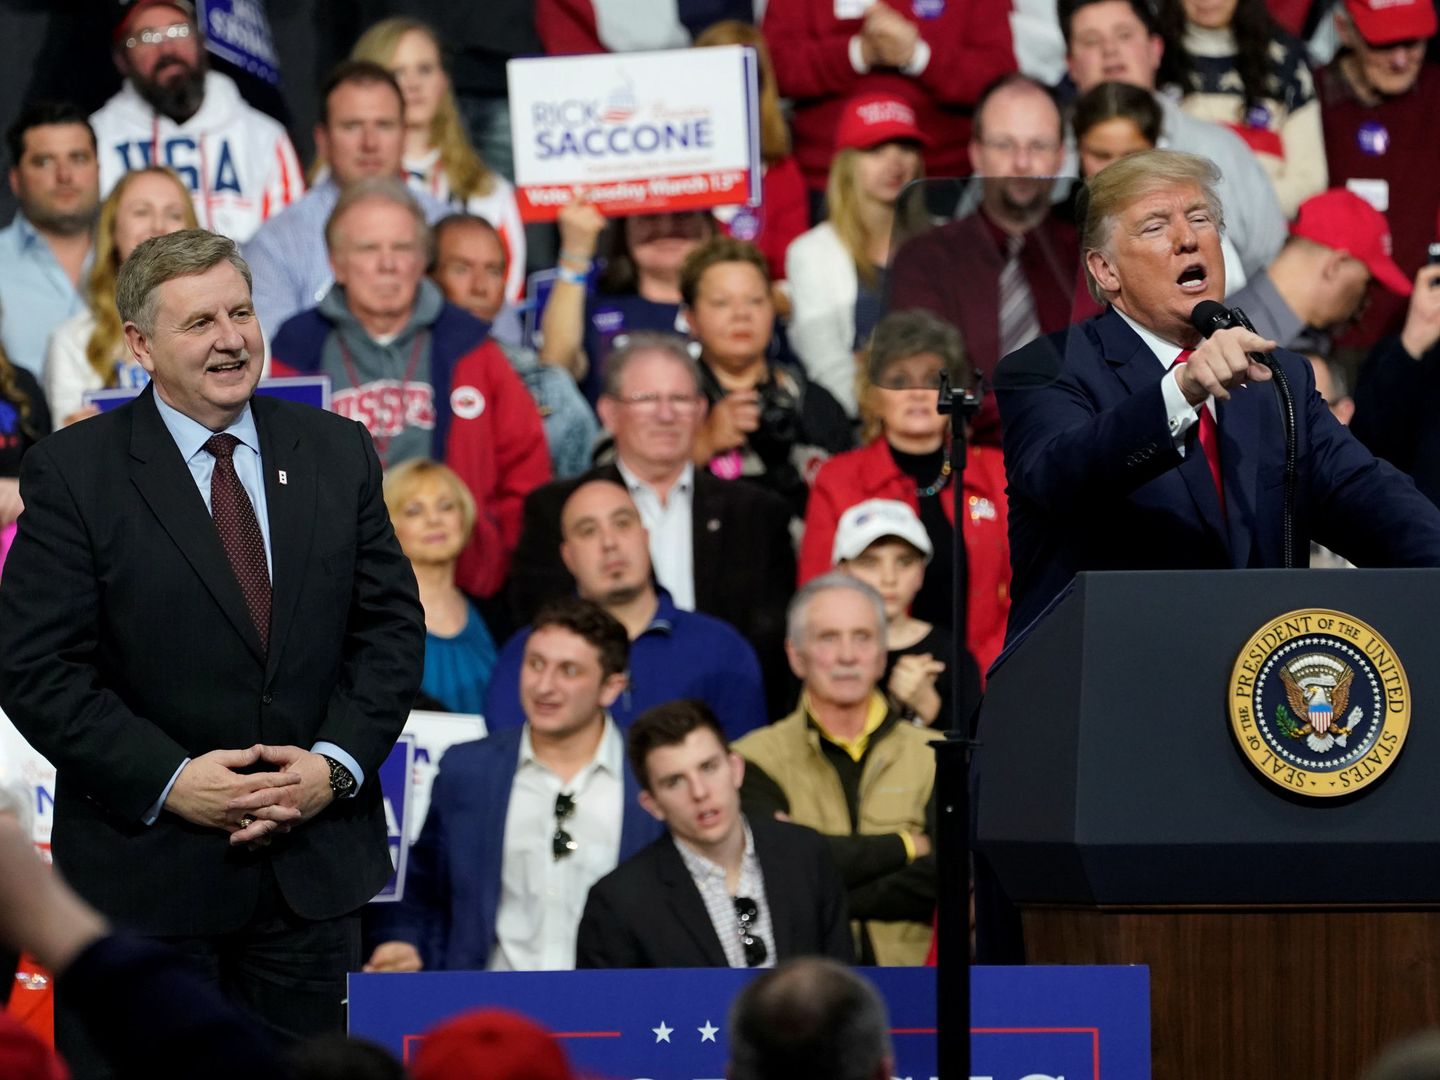 Donald Trump habla en apoyo del candidato republicano al congreso Rick Saccone en Pensilvania, el 10 de marzo de 2018. (Reuters)